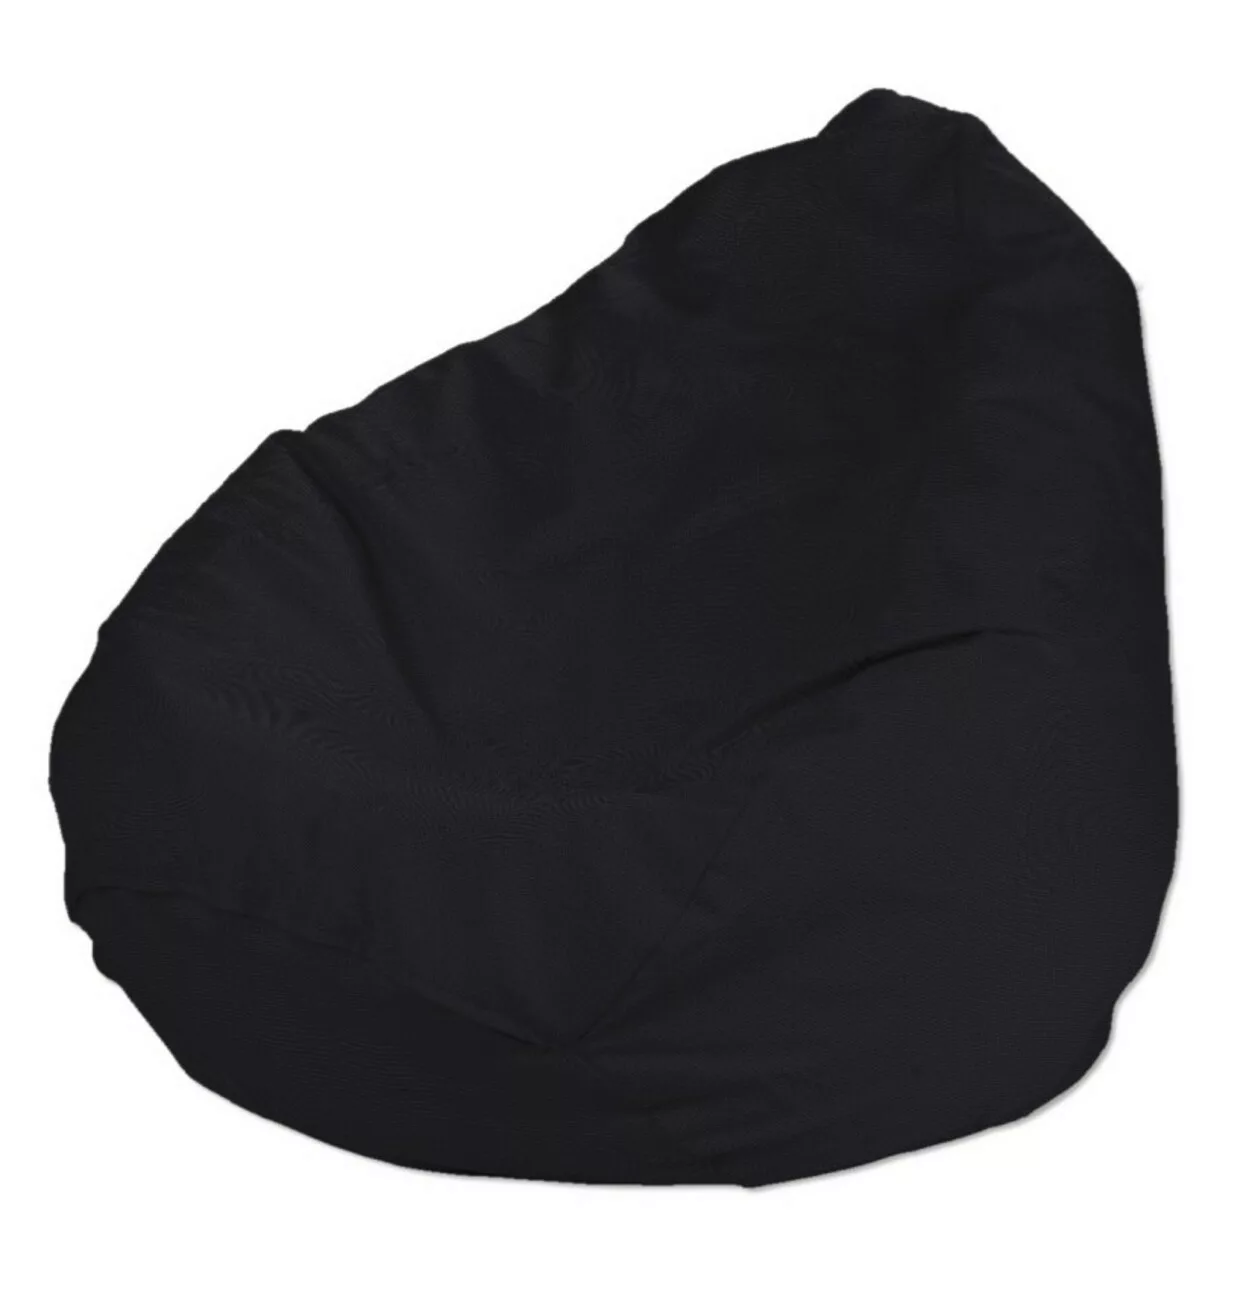 Bezug für Sitzsack, schwarz, Bezug für Sitzsack Ø50 x 85 cm, Etna (705-00) günstig online kaufen